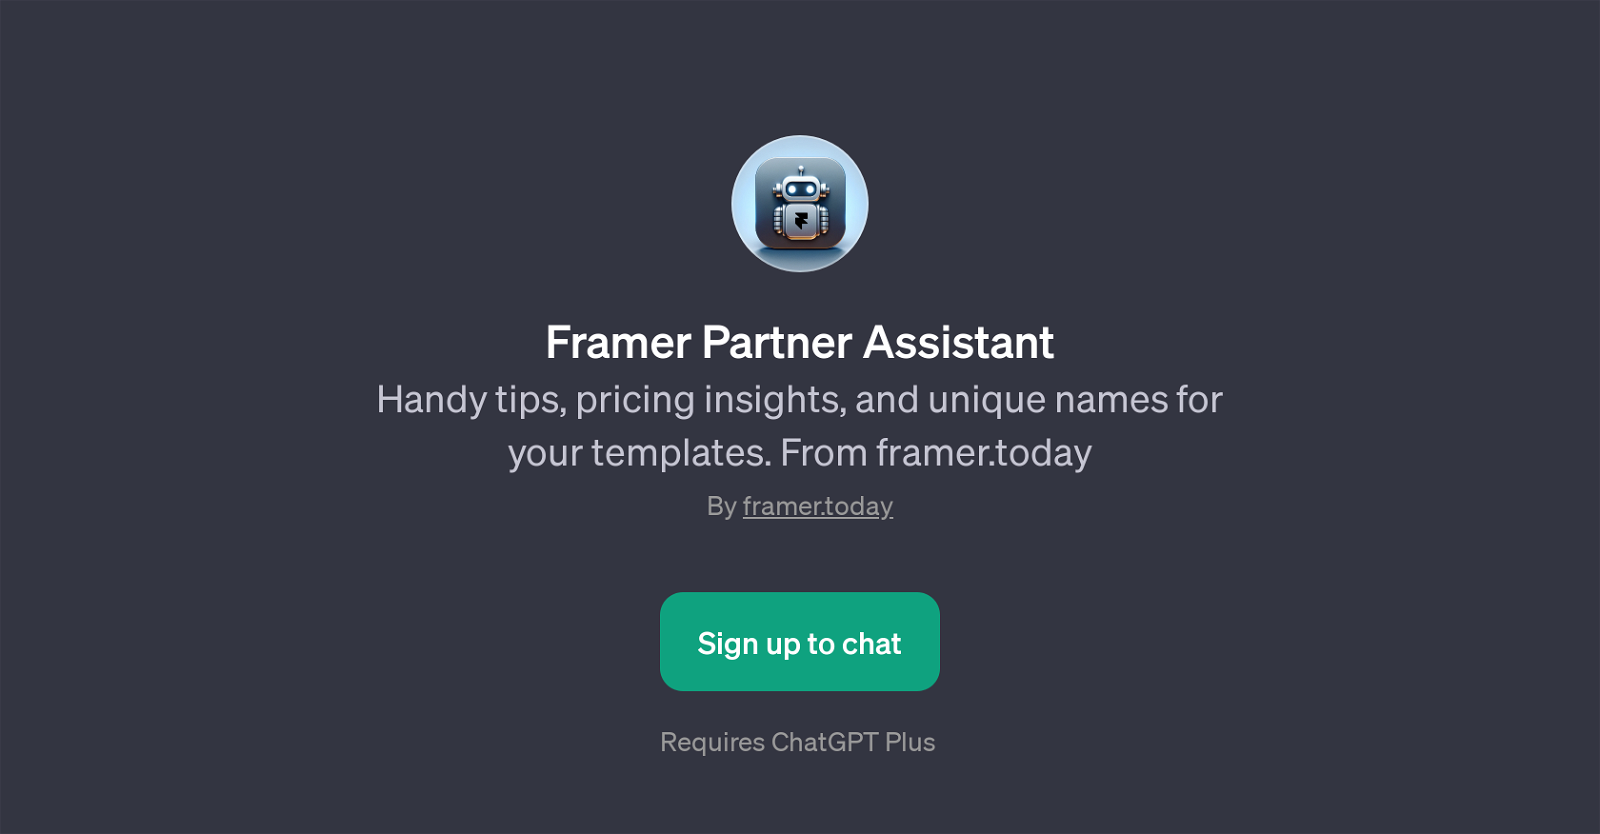 Framer Partner Assistant website